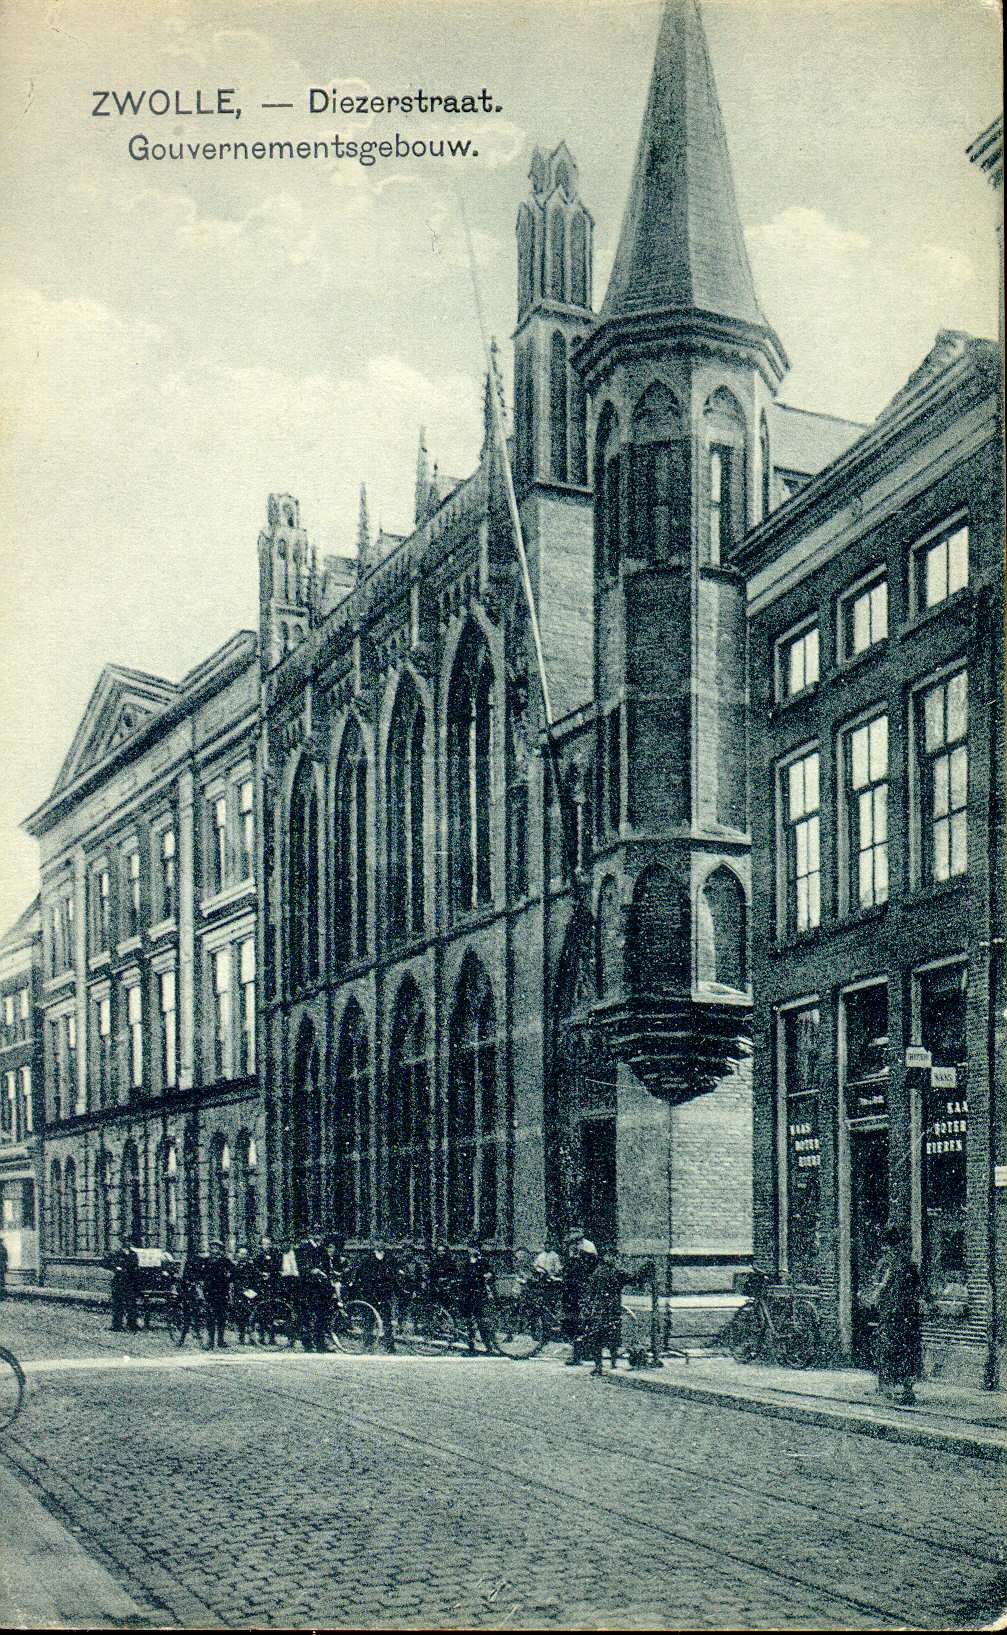 De Statenzaal van Zwolle in het verleden, straatbeeld (Collectie Overijssel)